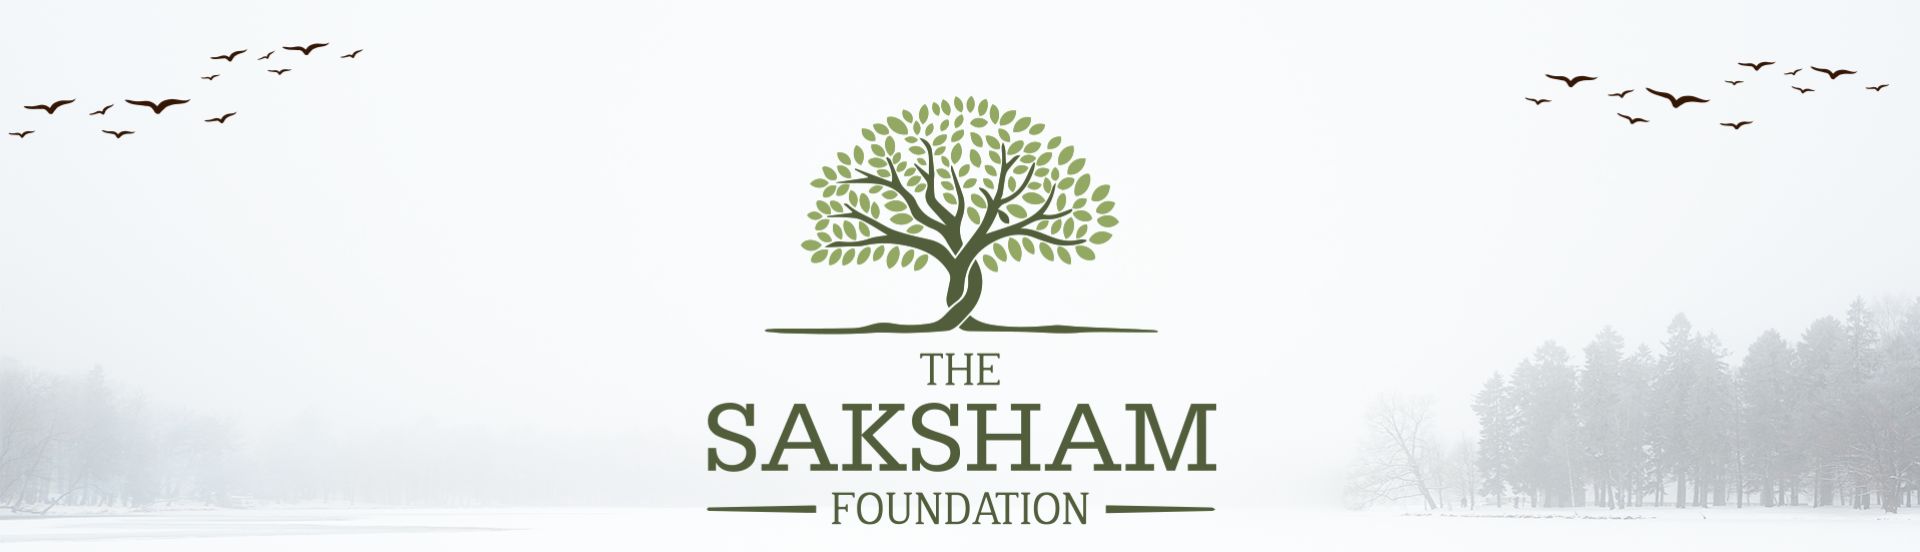 Saksham signature | handwriting | creativity - YouTube